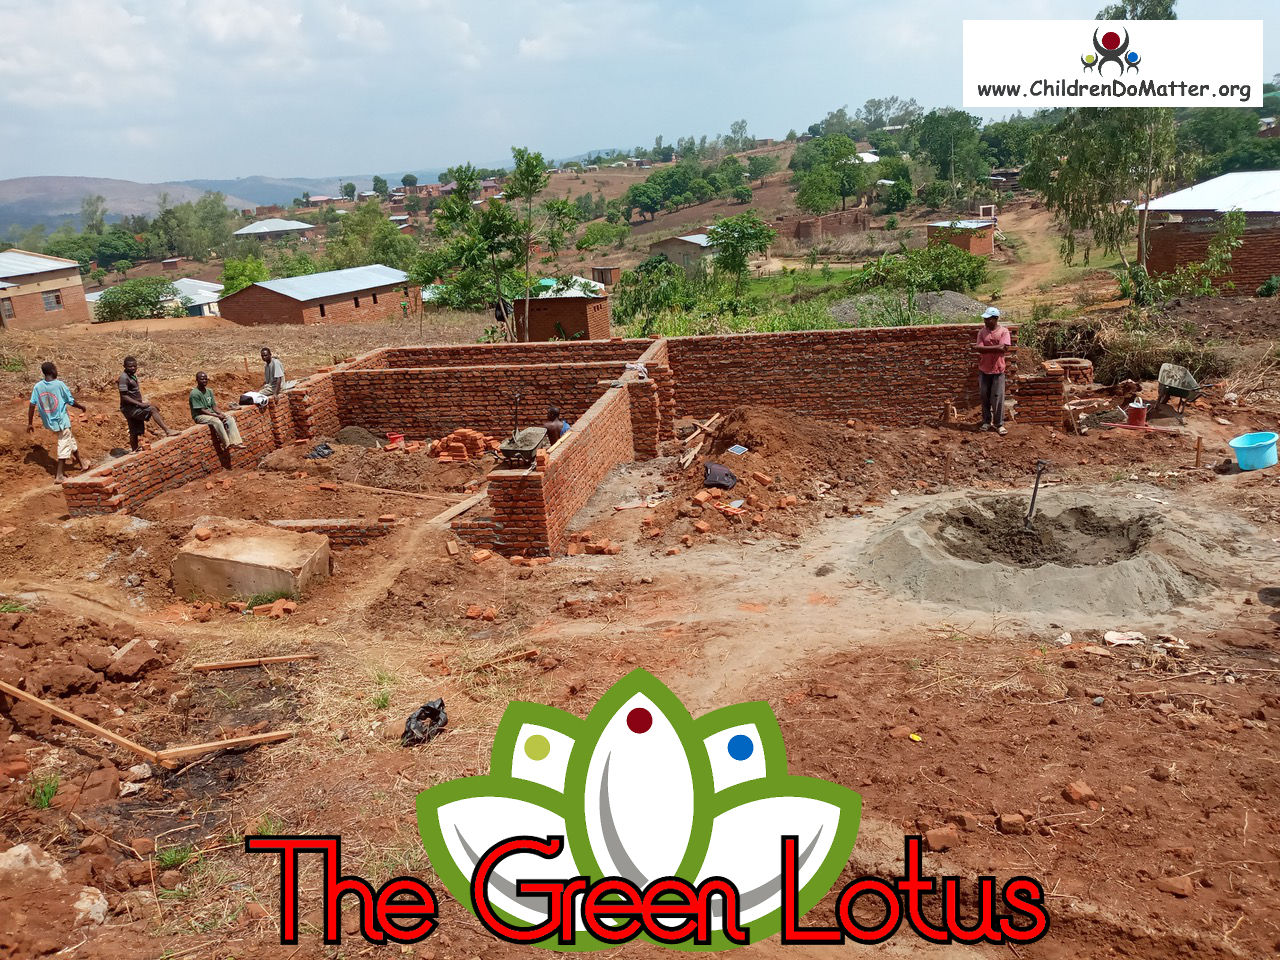 costruzione dell'orfanotrofio casa di accoglienza the green lotus a blantyre malawi - children do matter - 6